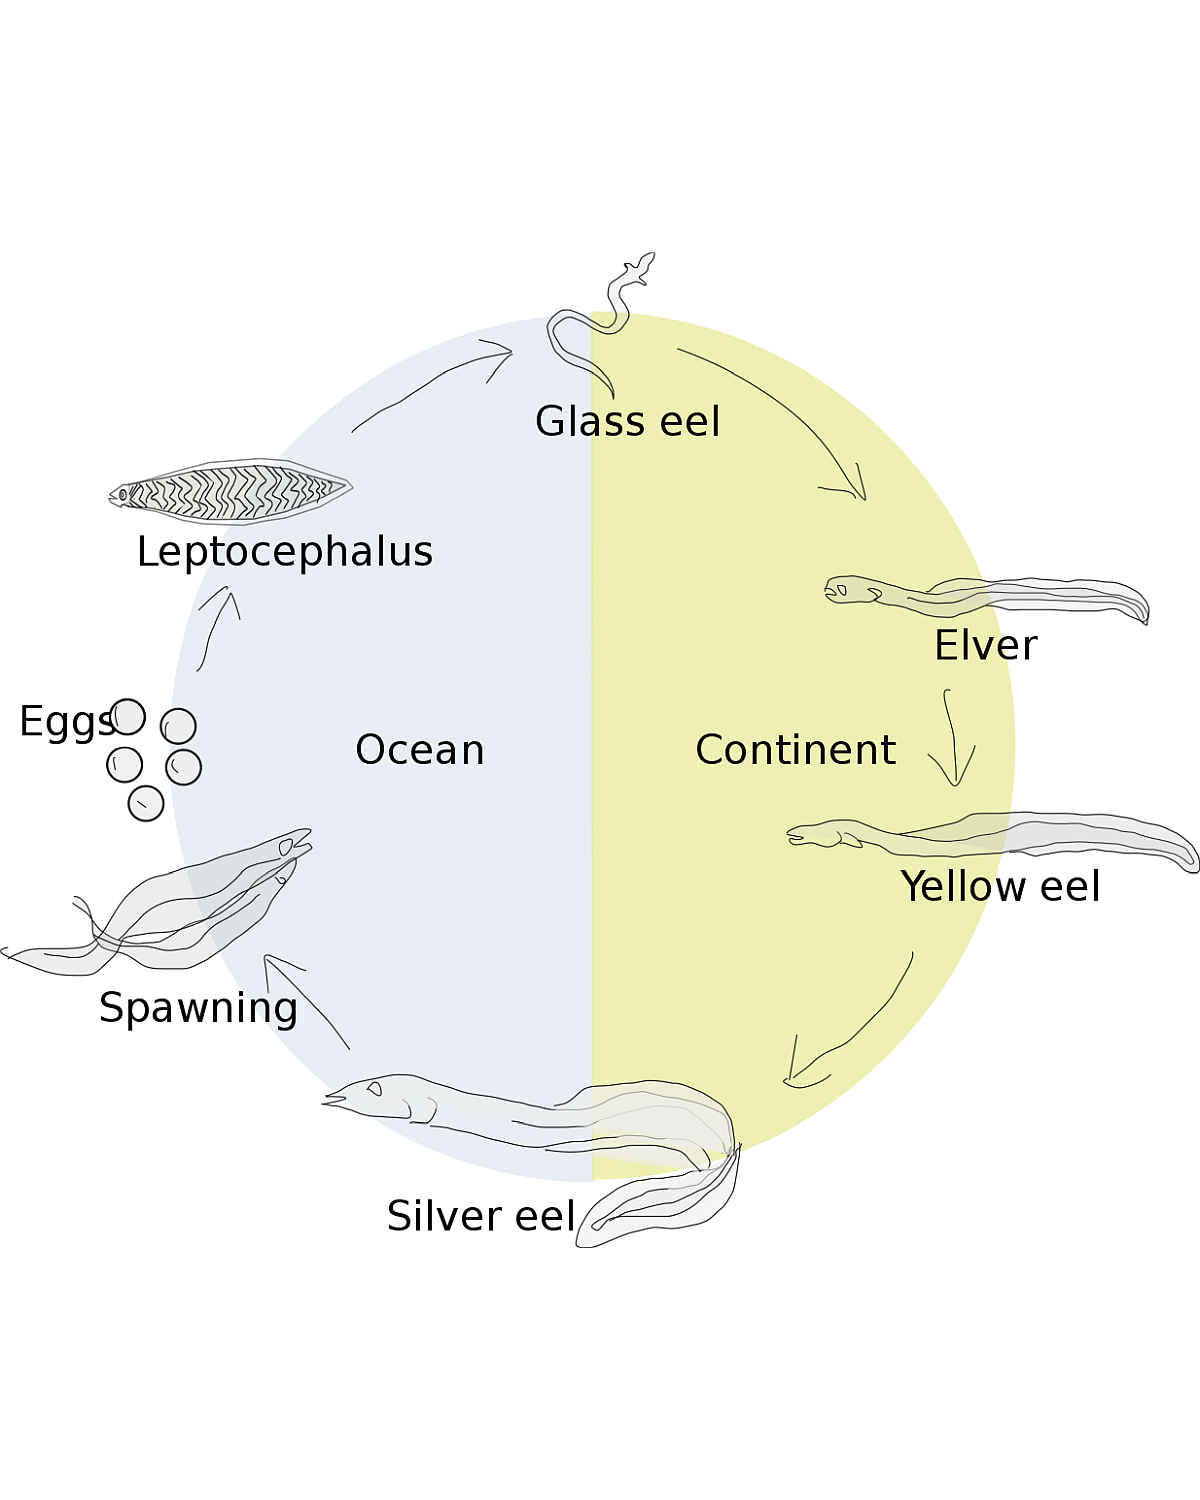 Eel cycle